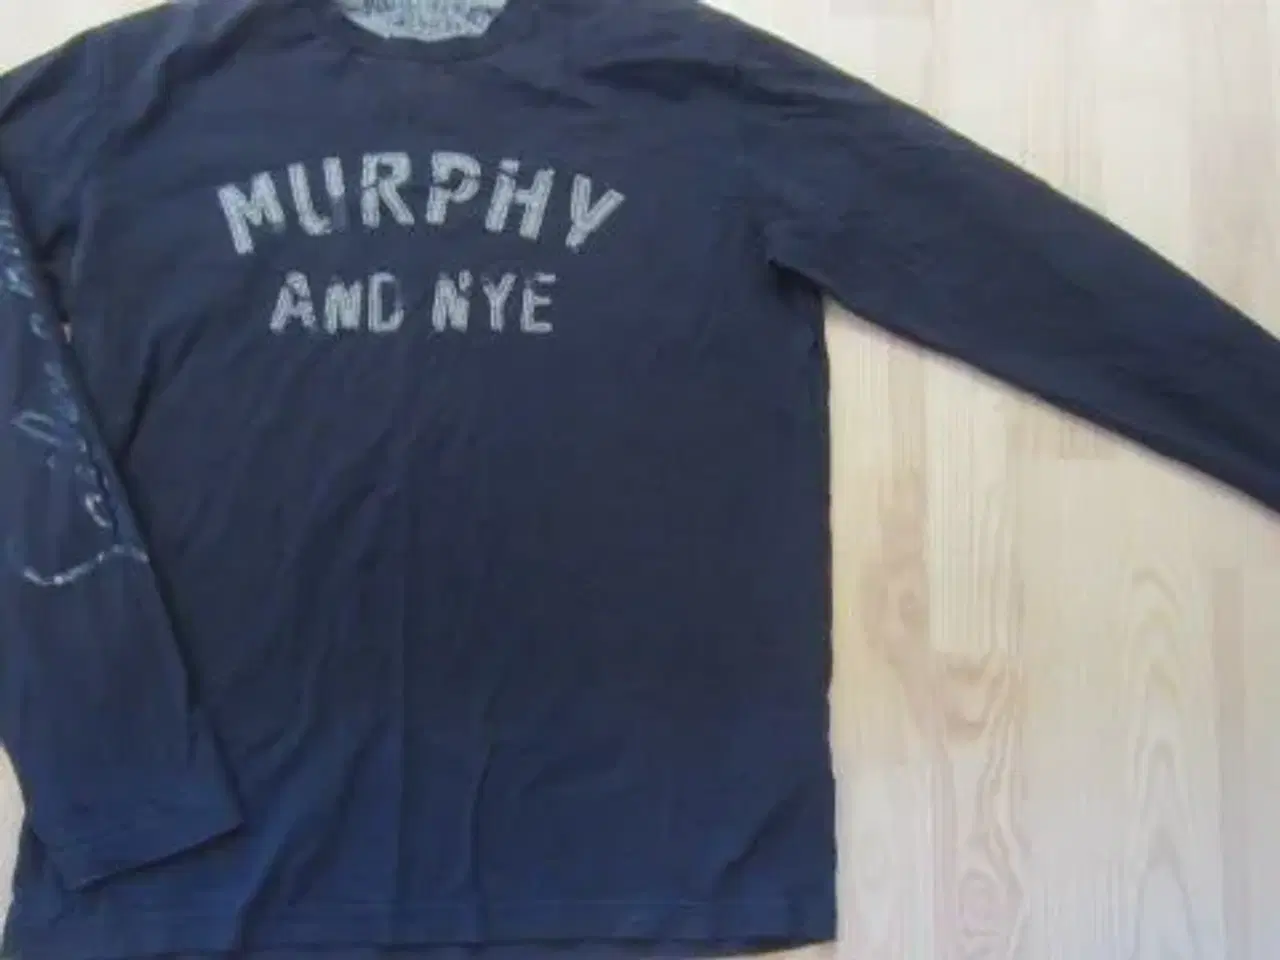 Billede 1 - Str. L, "Murphy and Nye" bluse